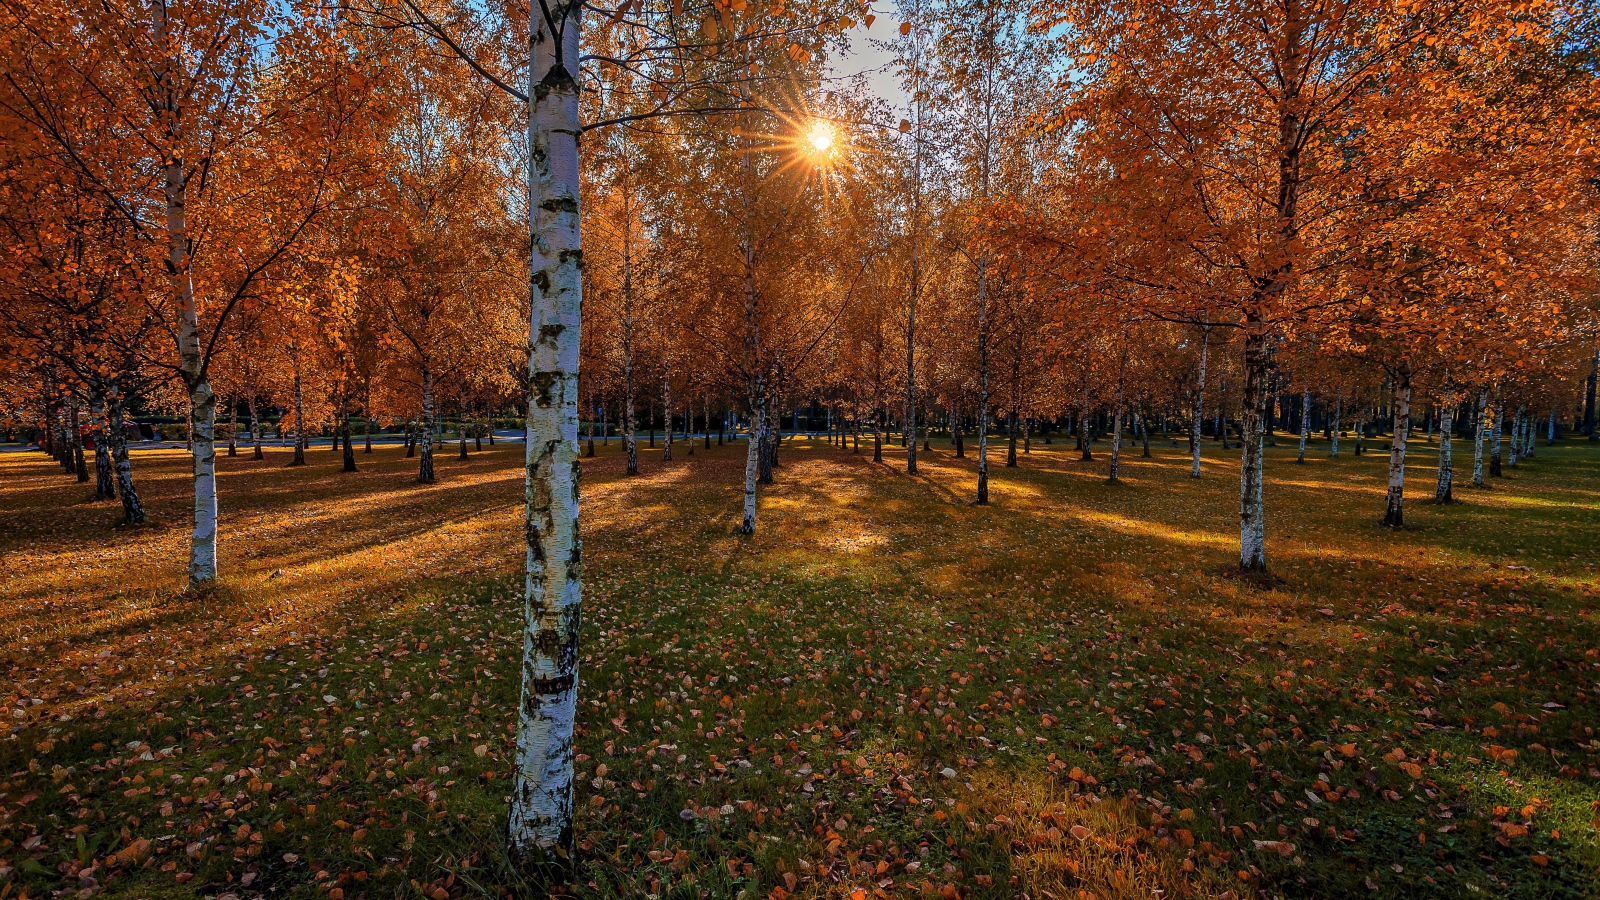 Солнце пробивается сквозь березовые деревья в осеннем парке